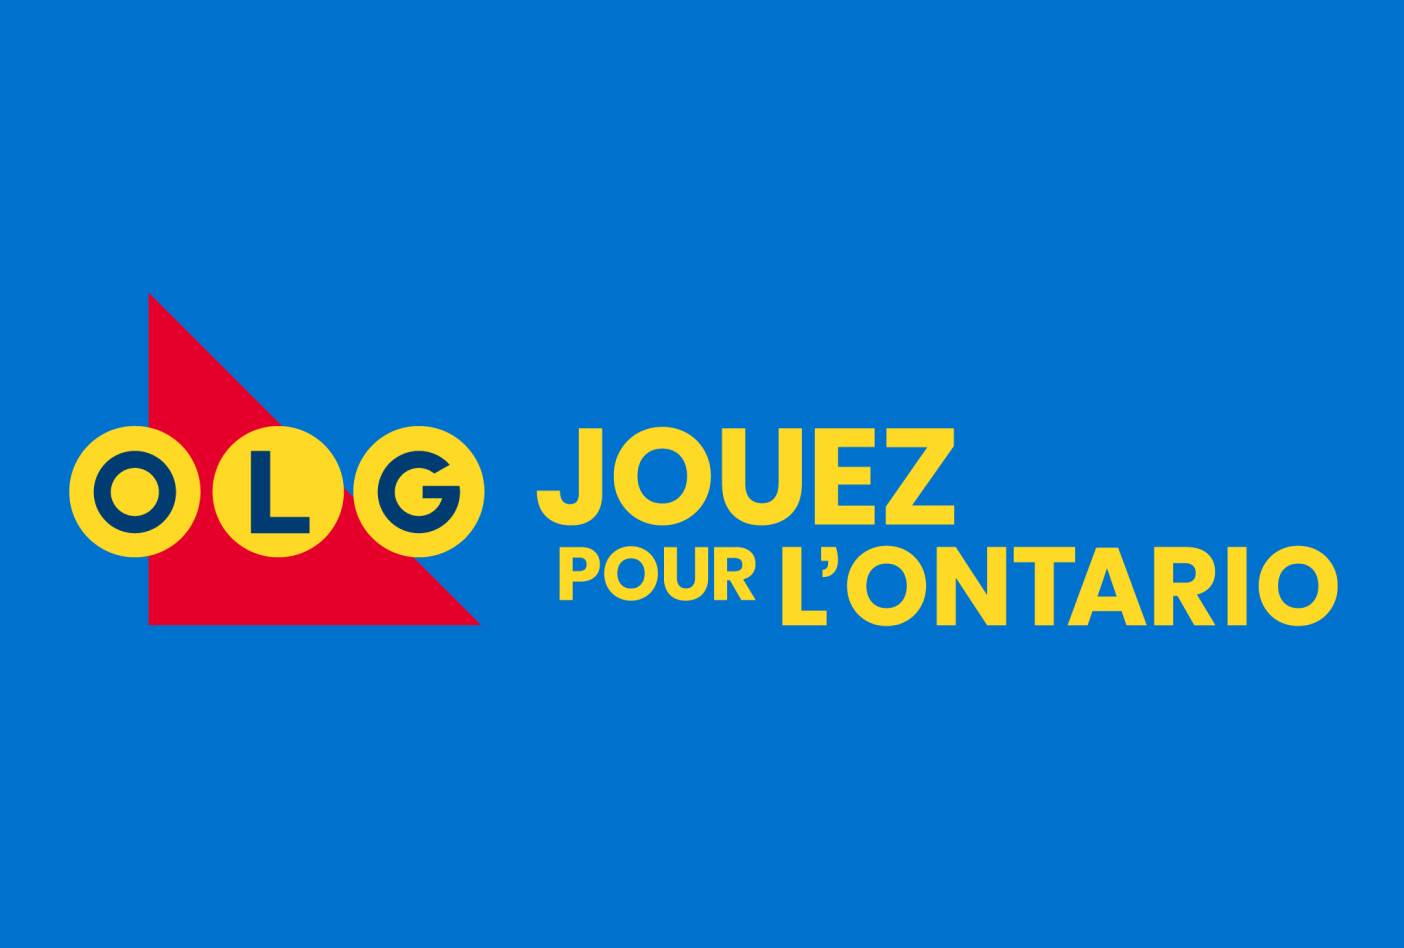 Logo de la Société des loteries et des jeux de l’Ontario avec mention Jouez pour l'Ontario.